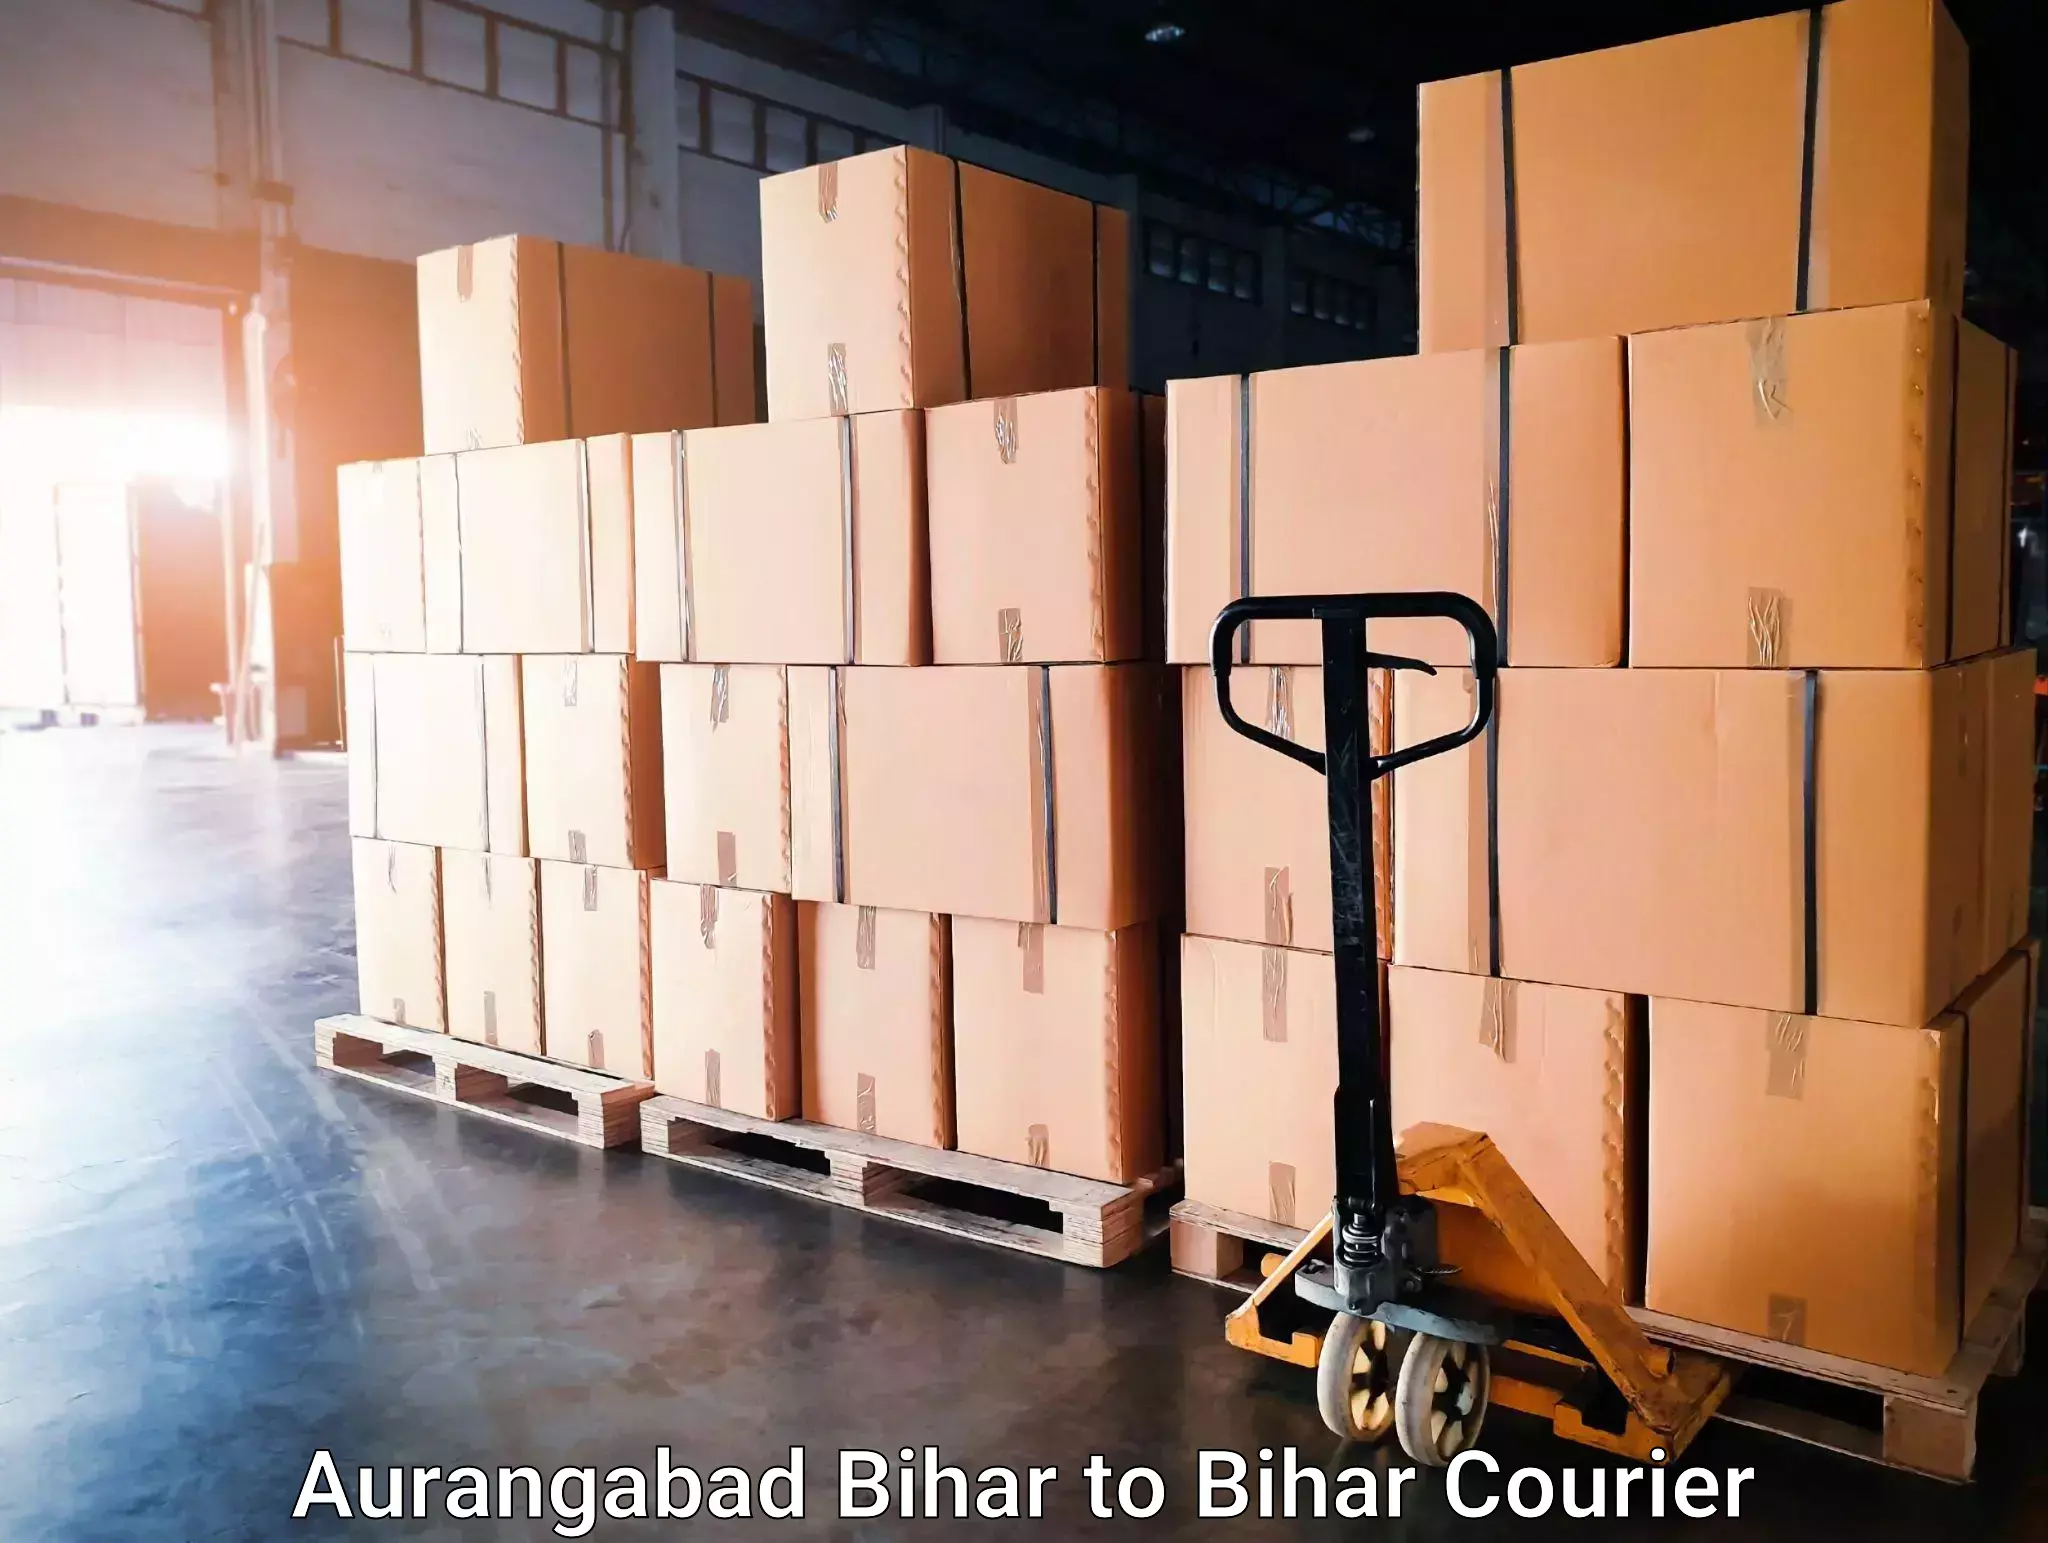 Furniture delivery service Aurangabad Bihar to Bihar